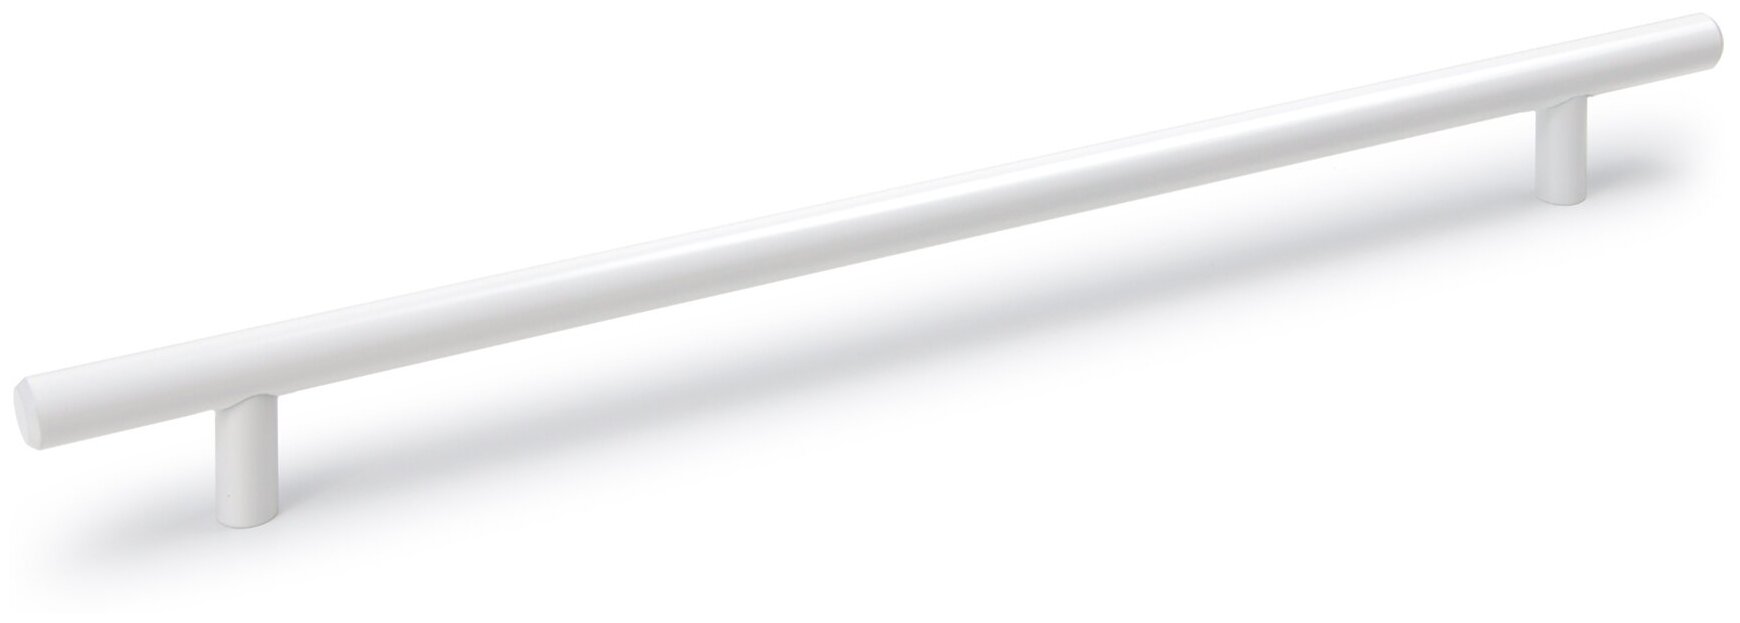 Мебельная ручка - рейлинг длина 256 мм диаметр 12 мм цвет - белый